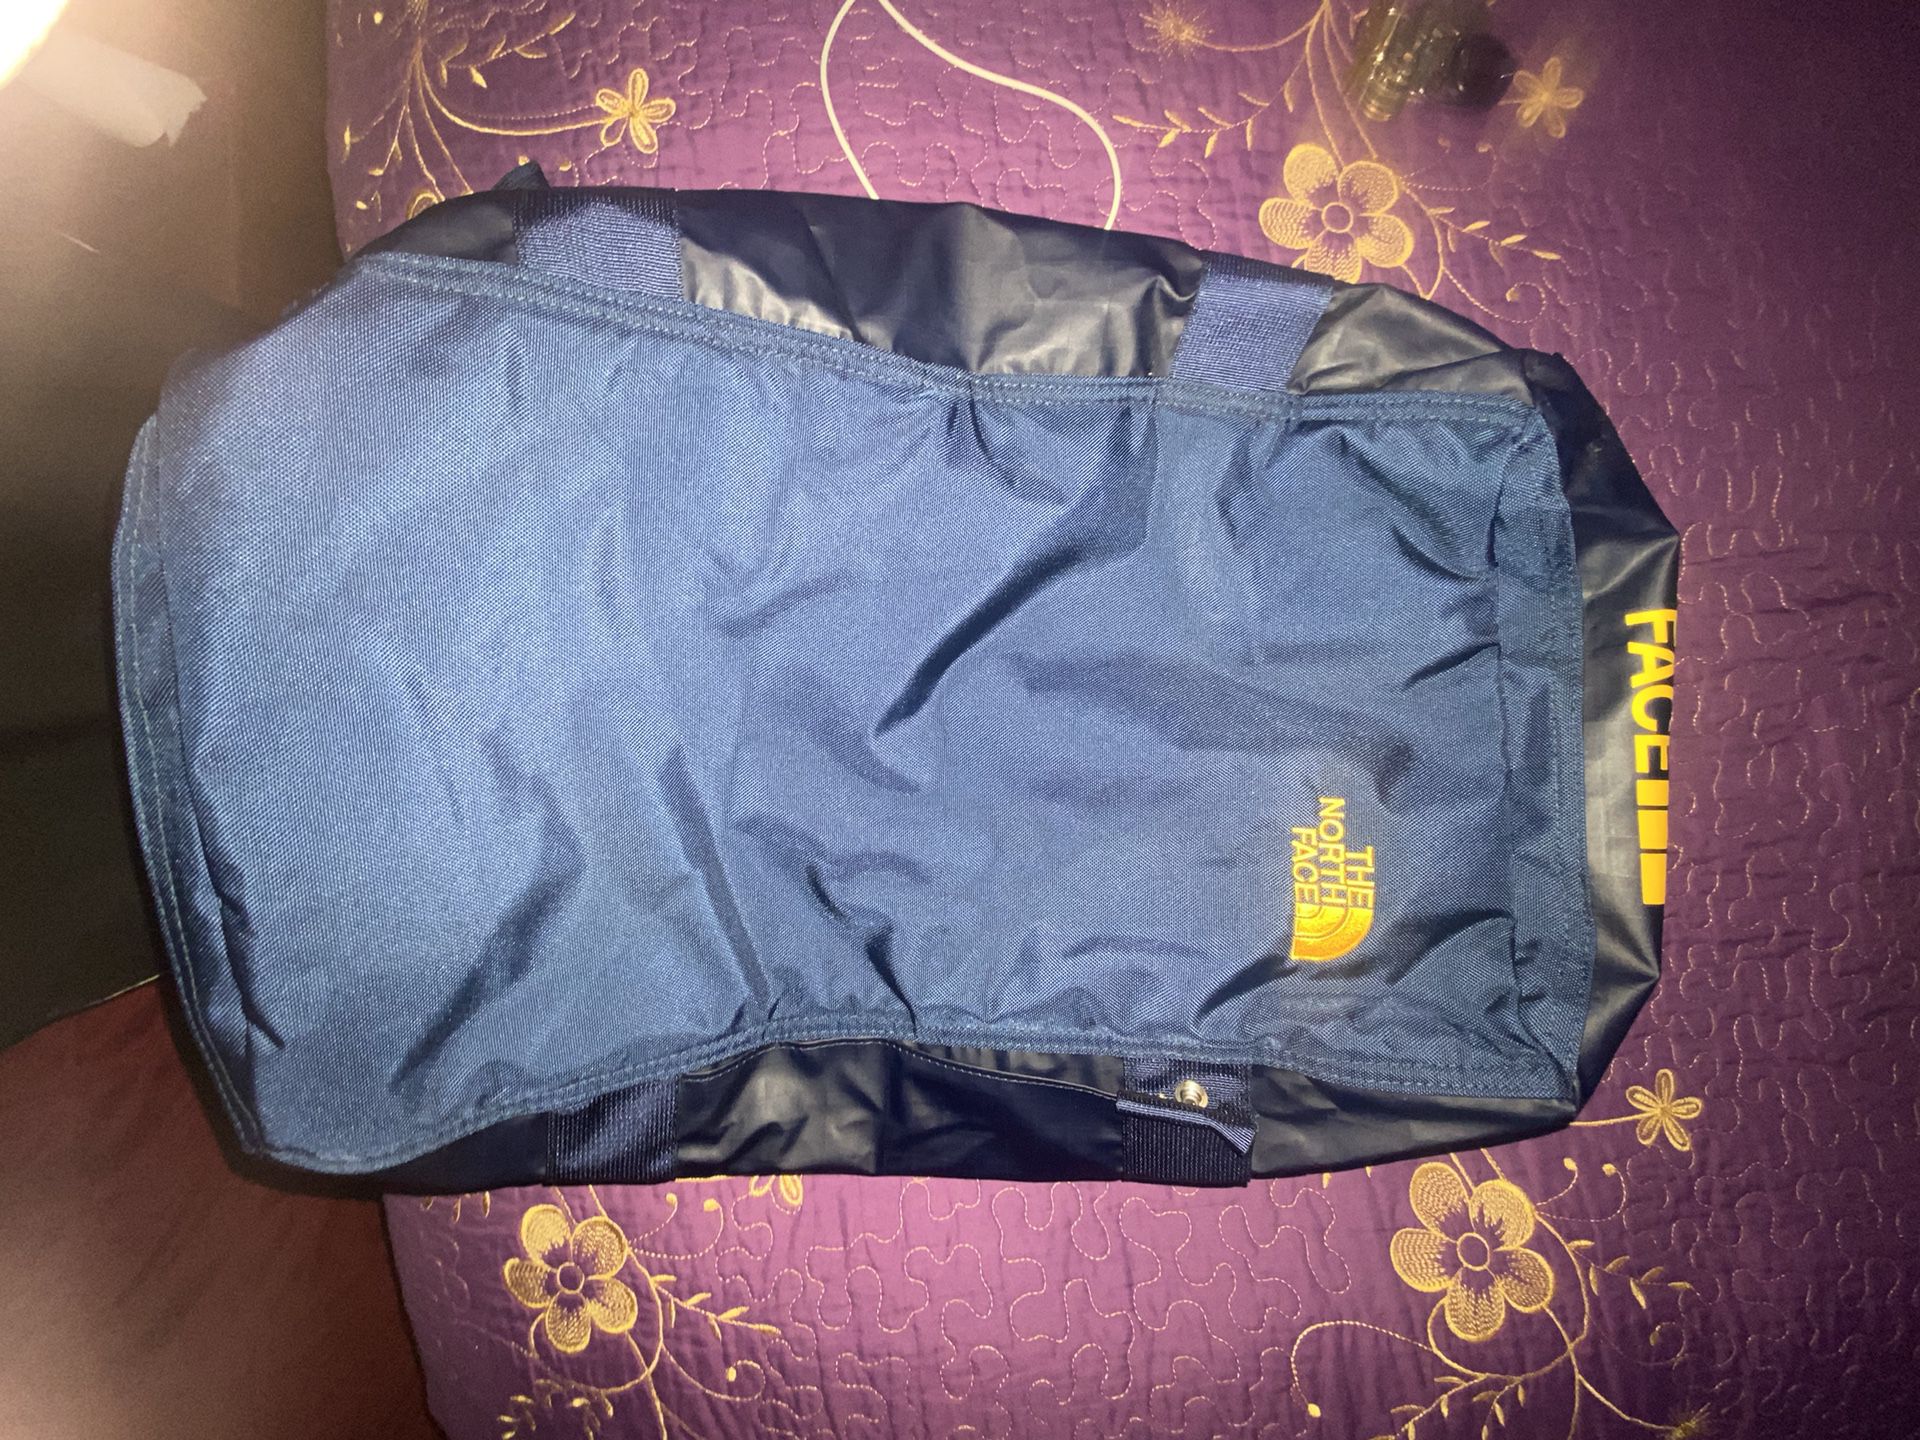 NorthFace Luggage/backpack 70$